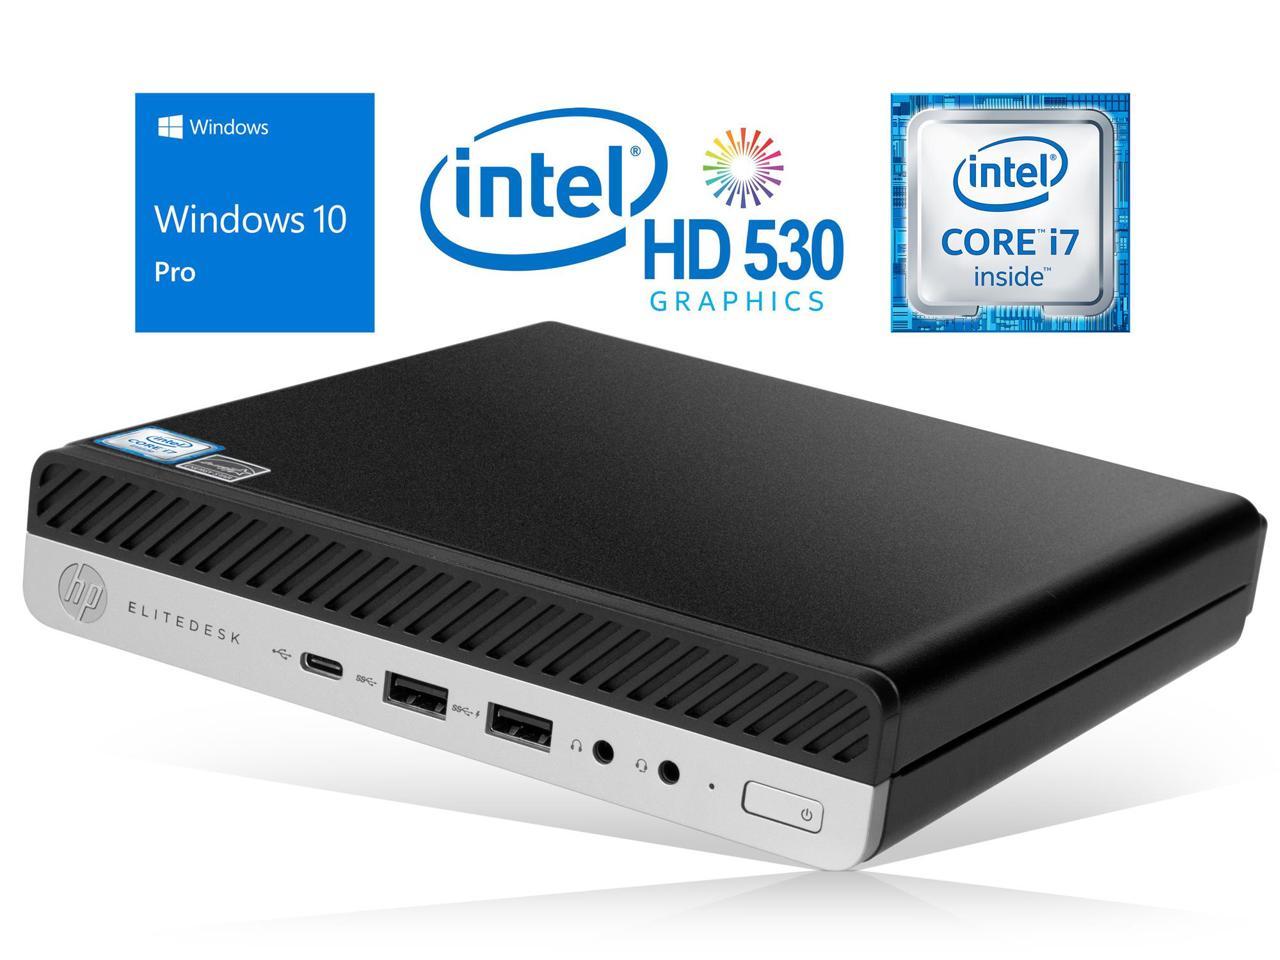 HP EliteDesk 800 G3 Mini PC, Intel Core i7-6700 Upto 4.0GHz, 16GB RAM, 2TB SSD, DisplayPort, Wi-Fi, Bluetooth, Windows 10 Pro